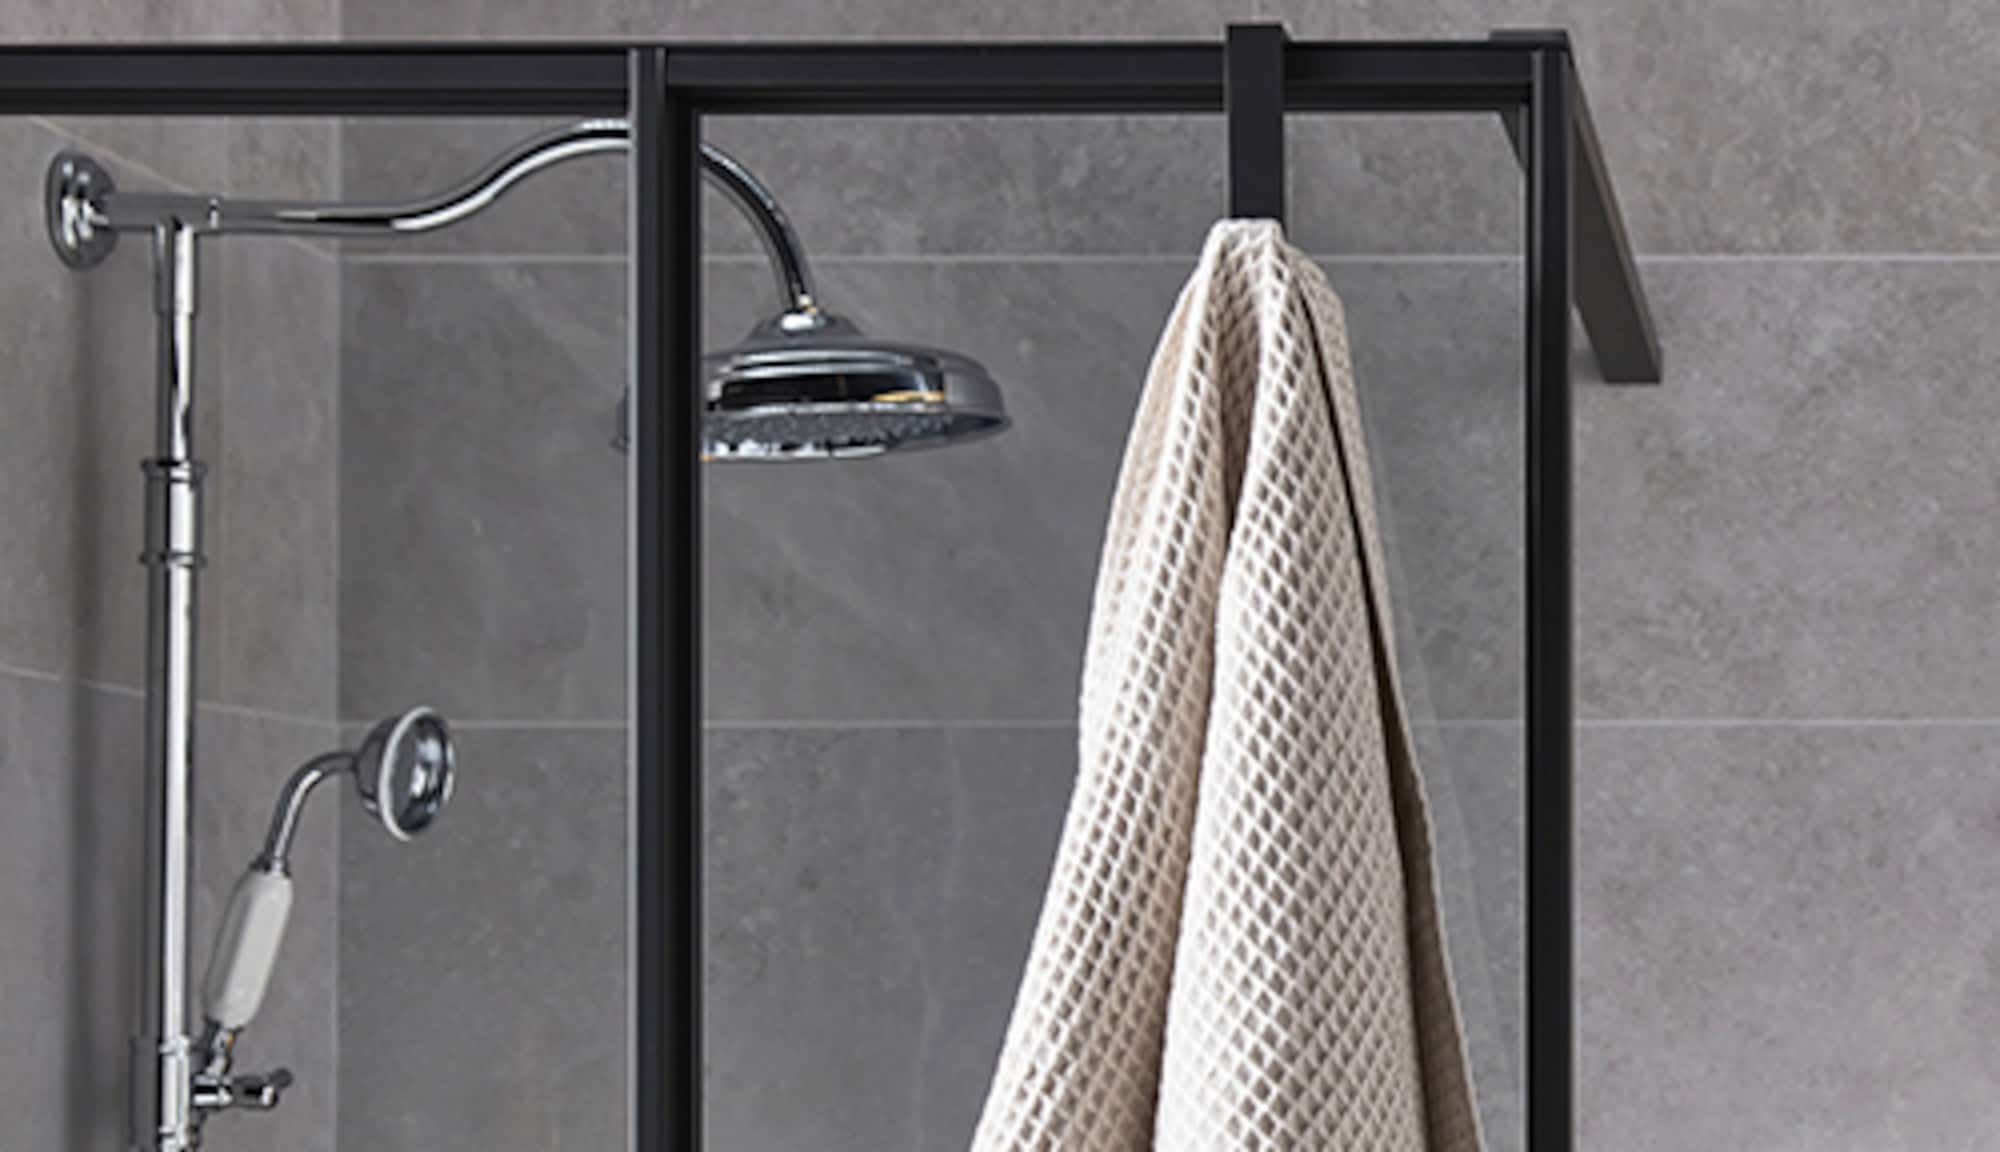 Et si nous vous proposions de rendre votre douche encore plus agréable et  relaxante grâce à un accessoire de douche simple à installer comme un  mitigeur ou une colonne de douche ?